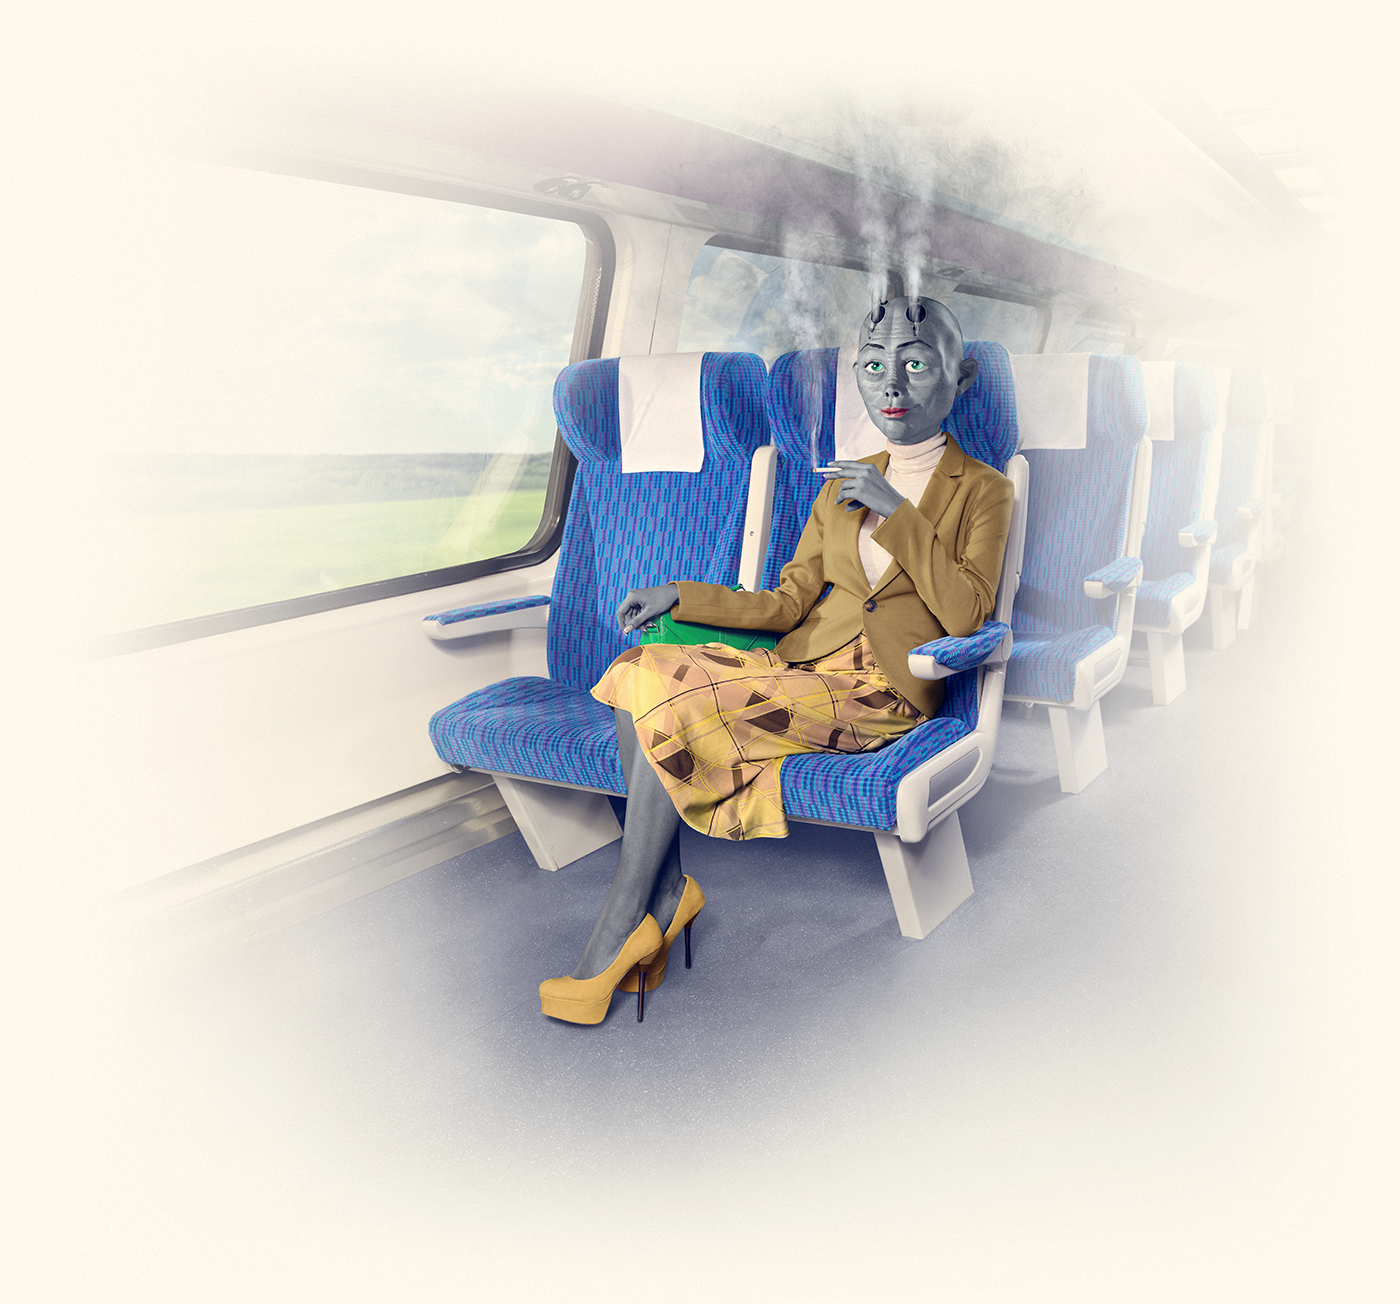 aliens trains transportation campaign Behavior people seat martians rails public colors